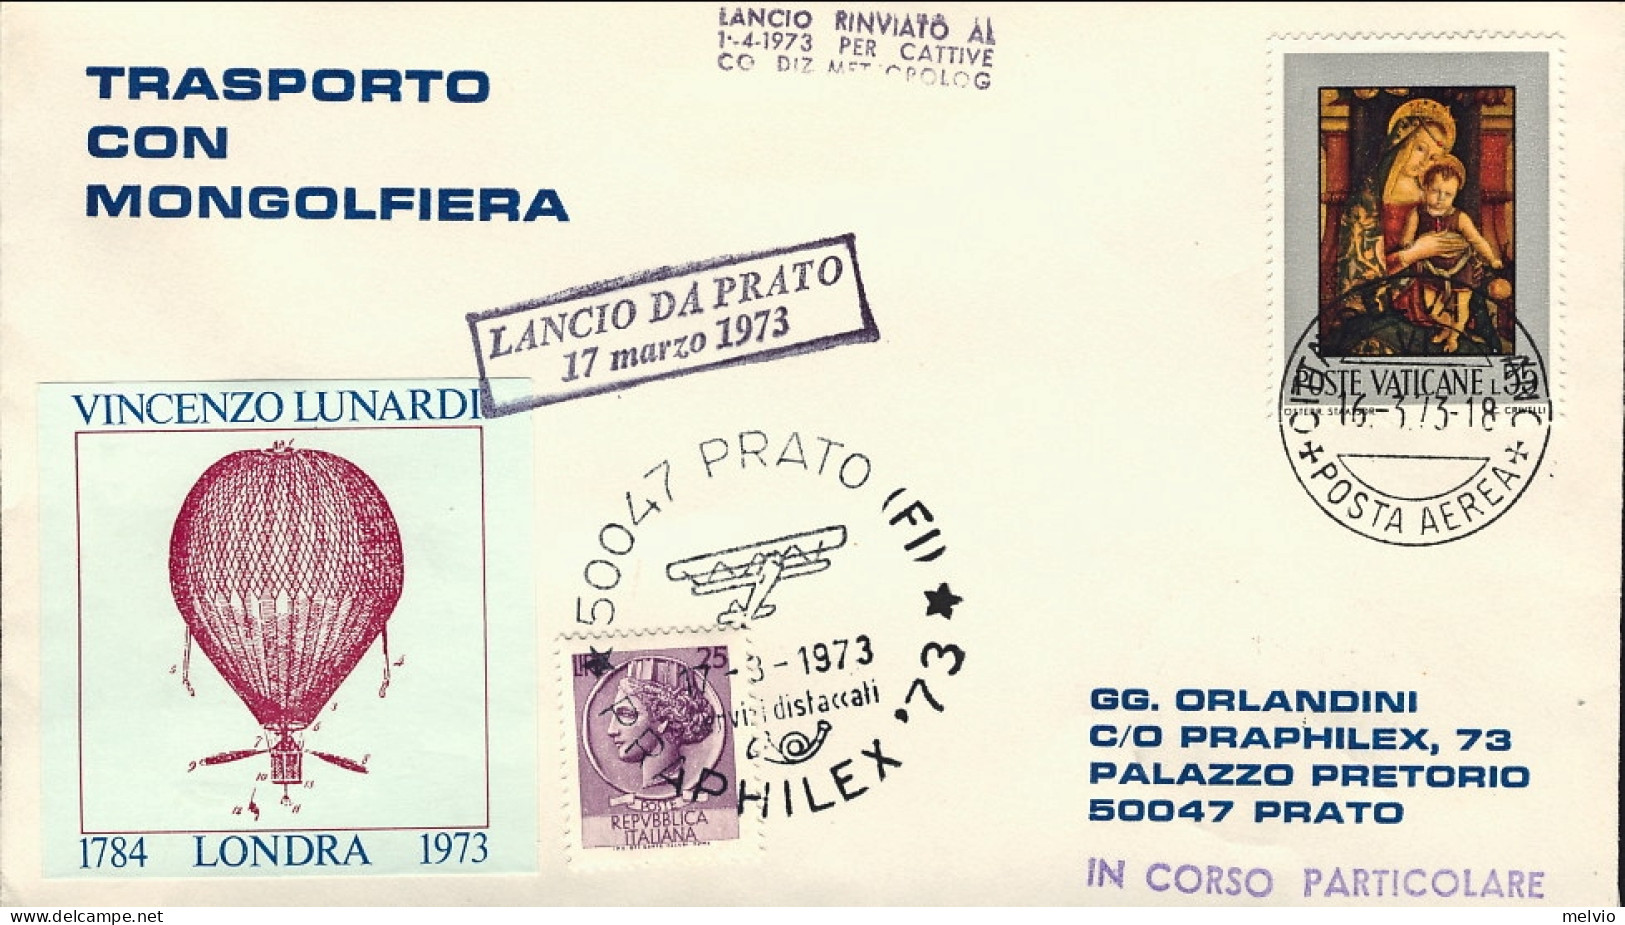 Vaticano-1974 Trasportato Con Mongolfiera Lancio Da Prato Lancio Rinviato Al 1 A - Aéreo